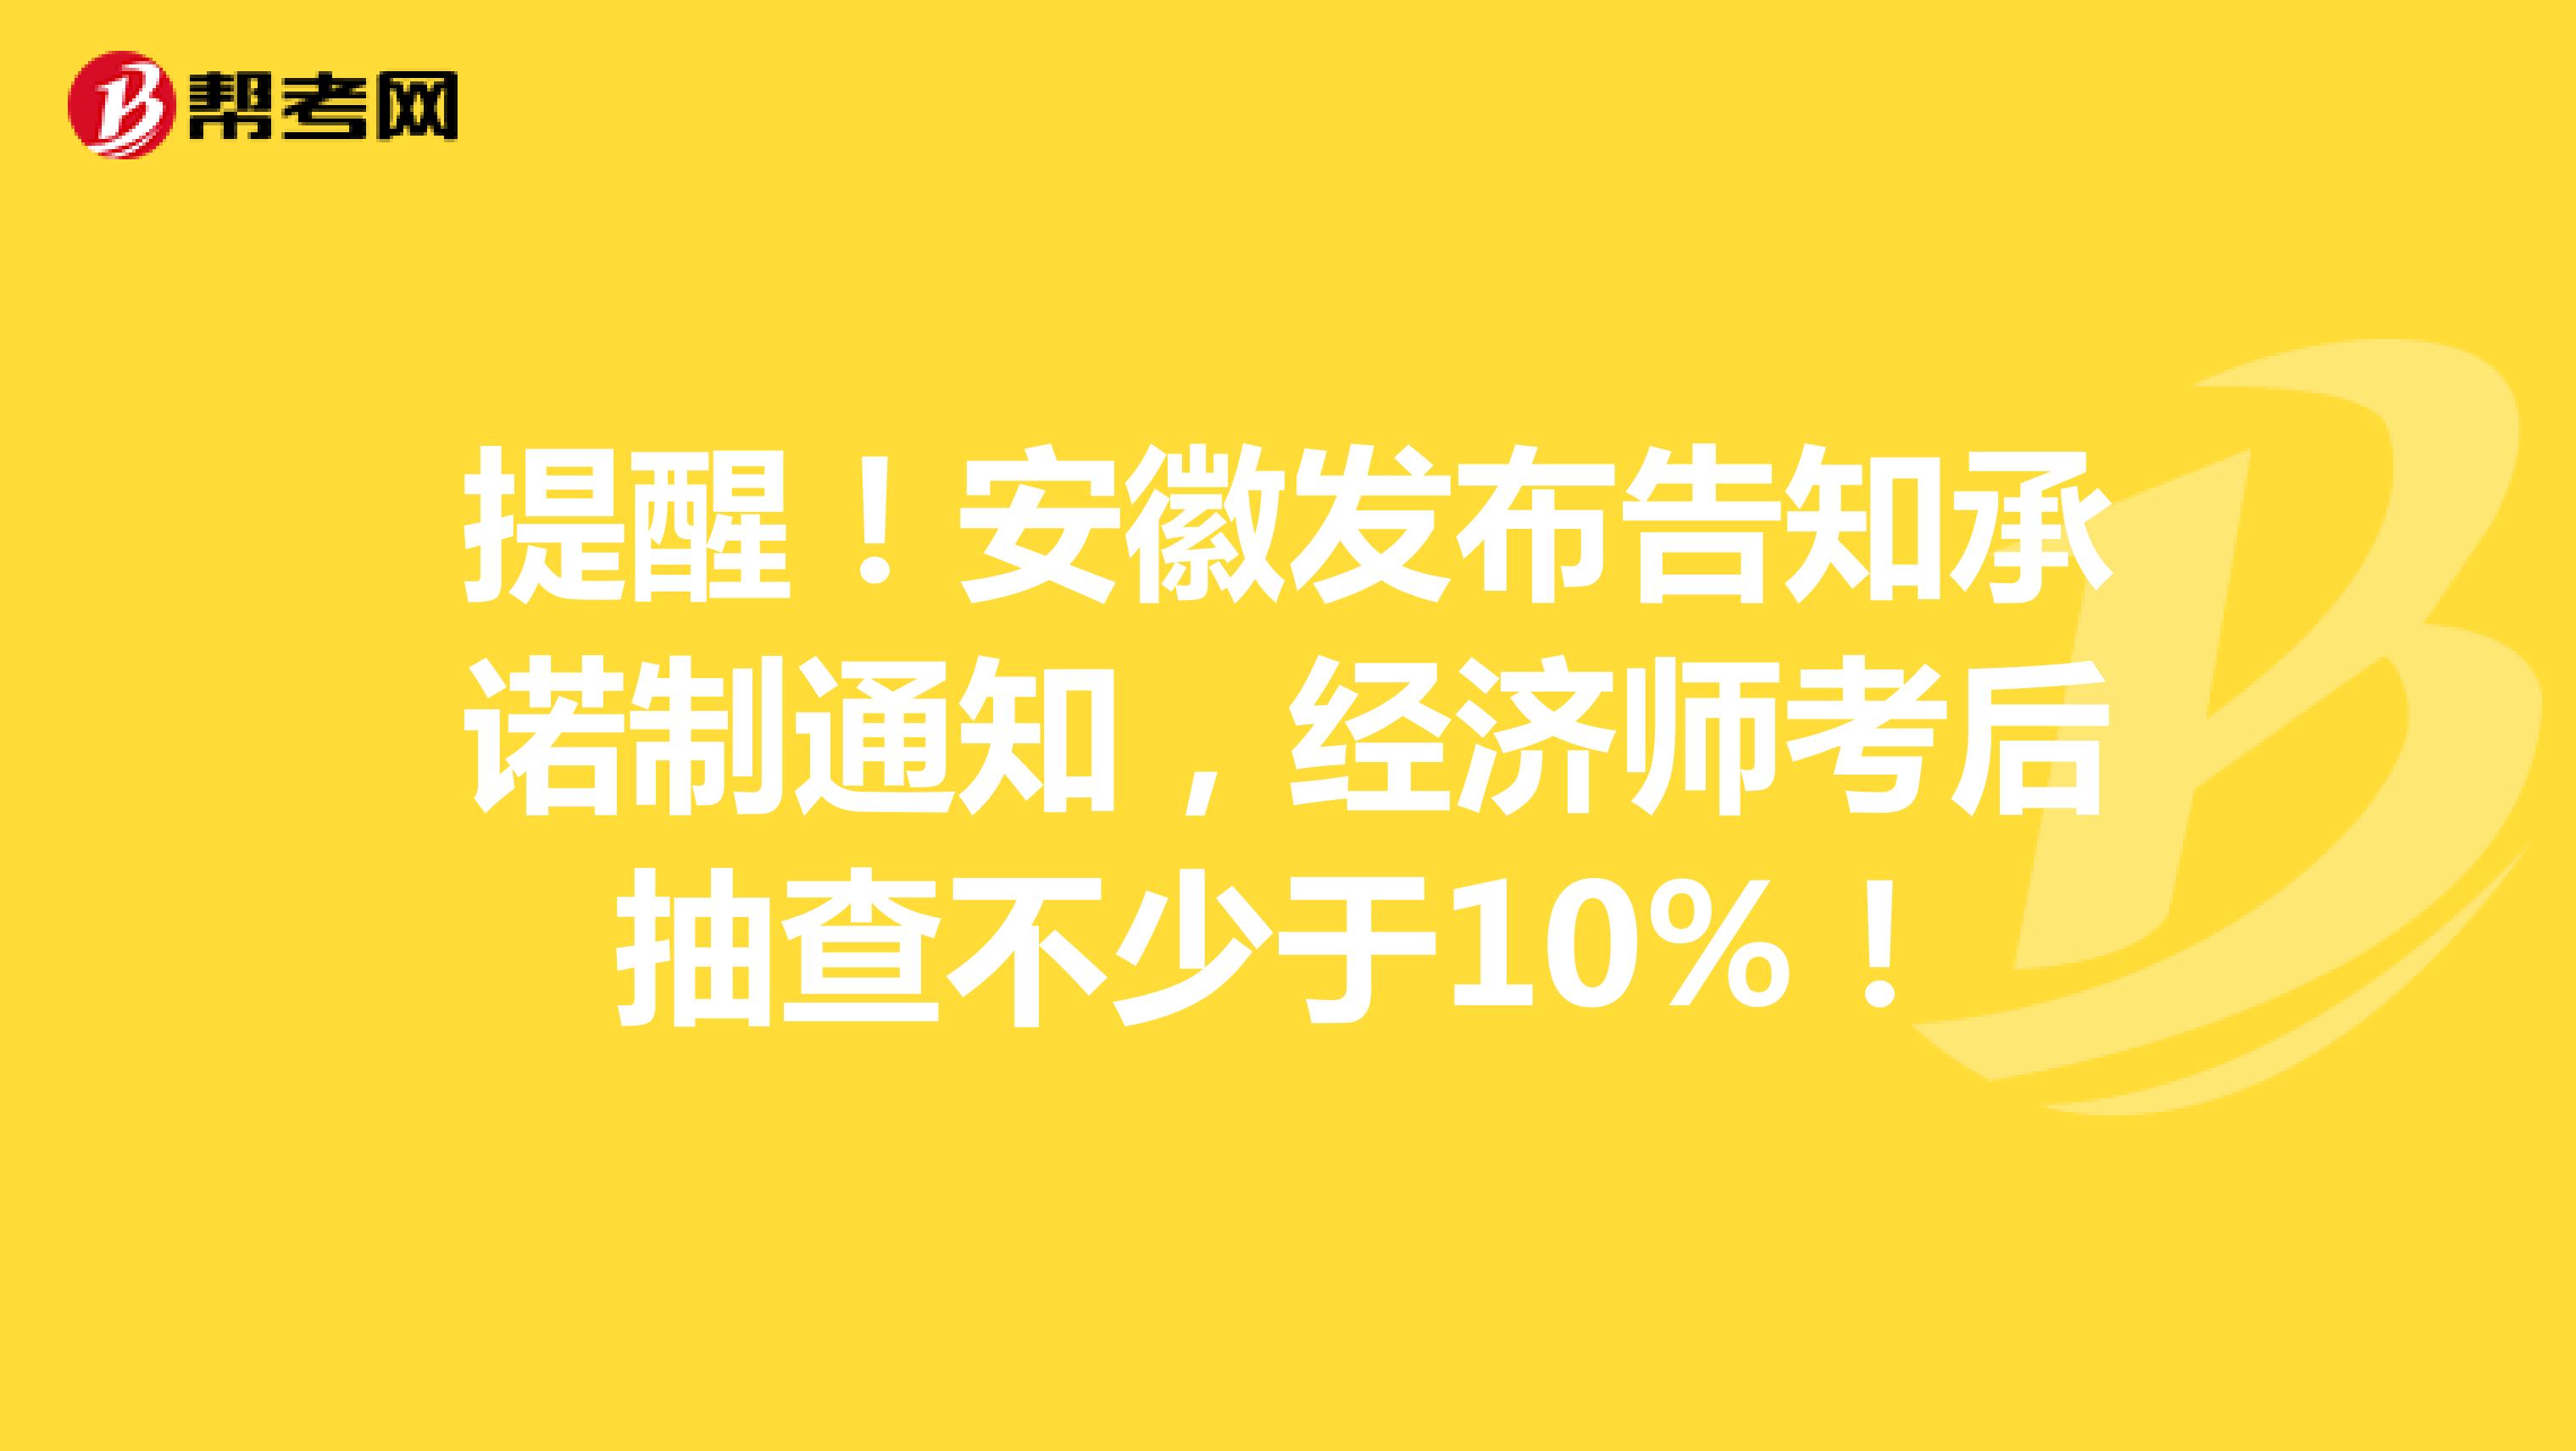 提醒！安徽发布告知承诺制通知，经济师考后抽查不少于10%！